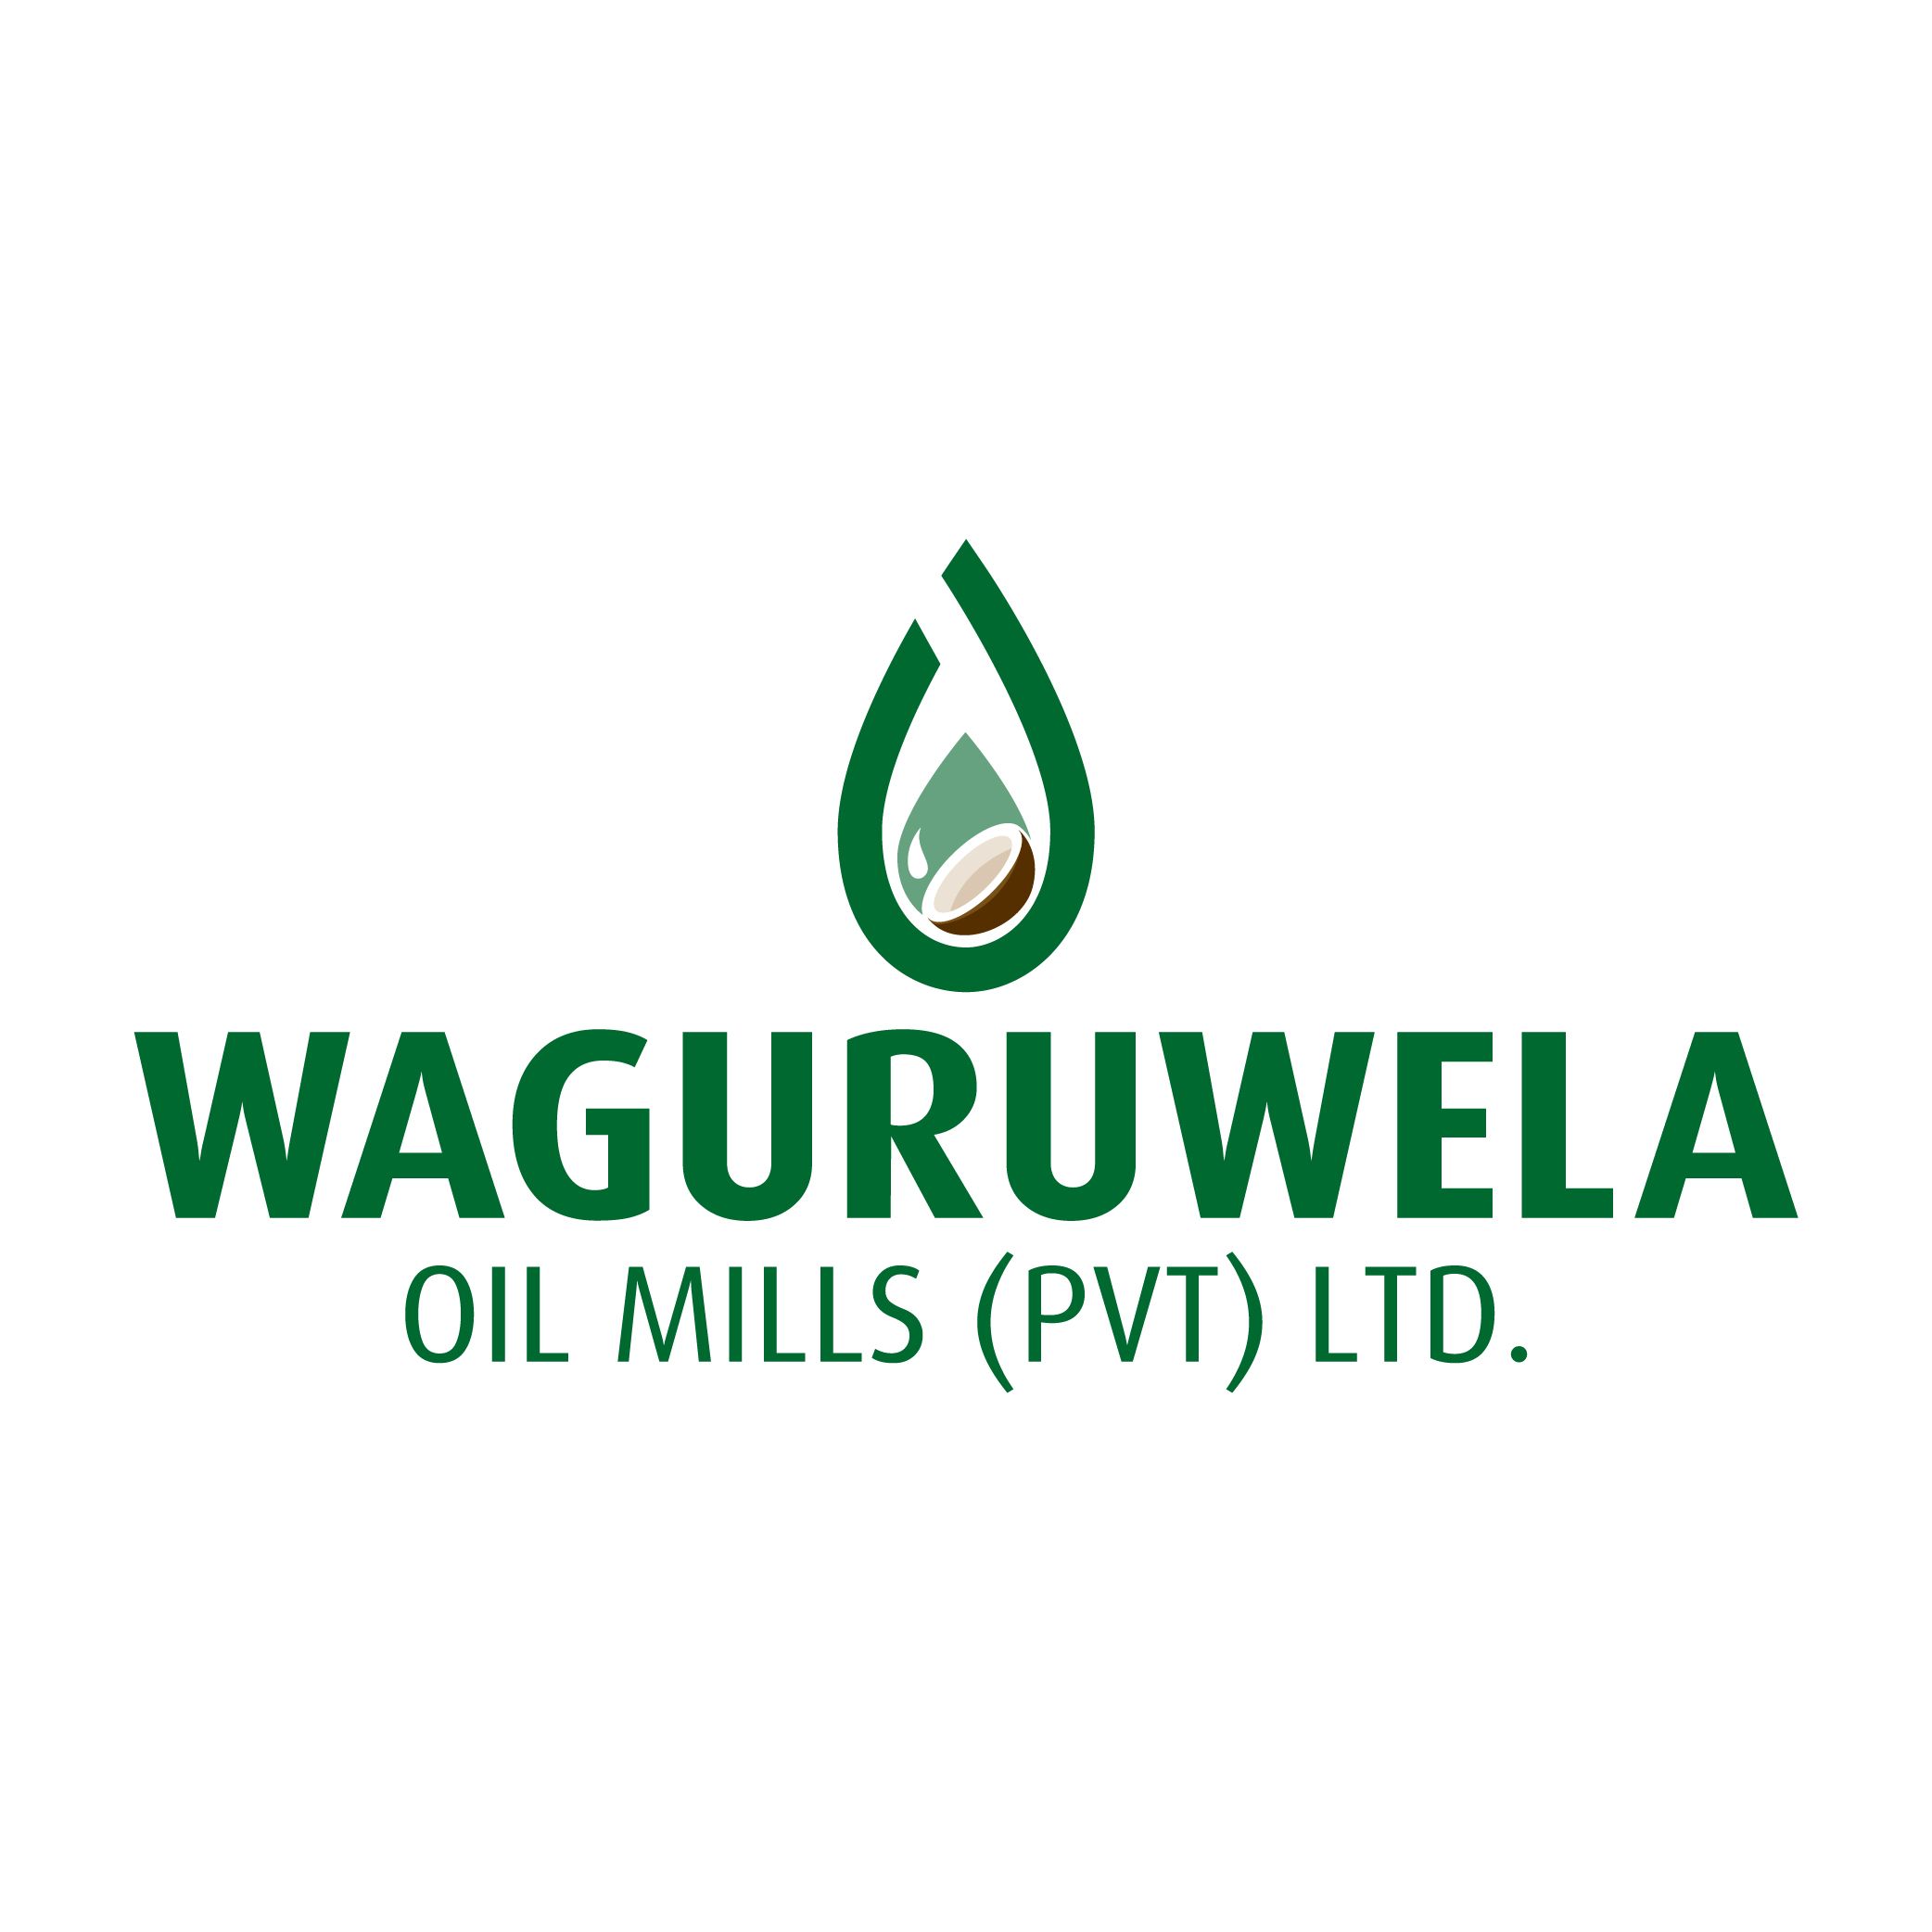 Waguruwela Oil Mills (Pvt) Ltd